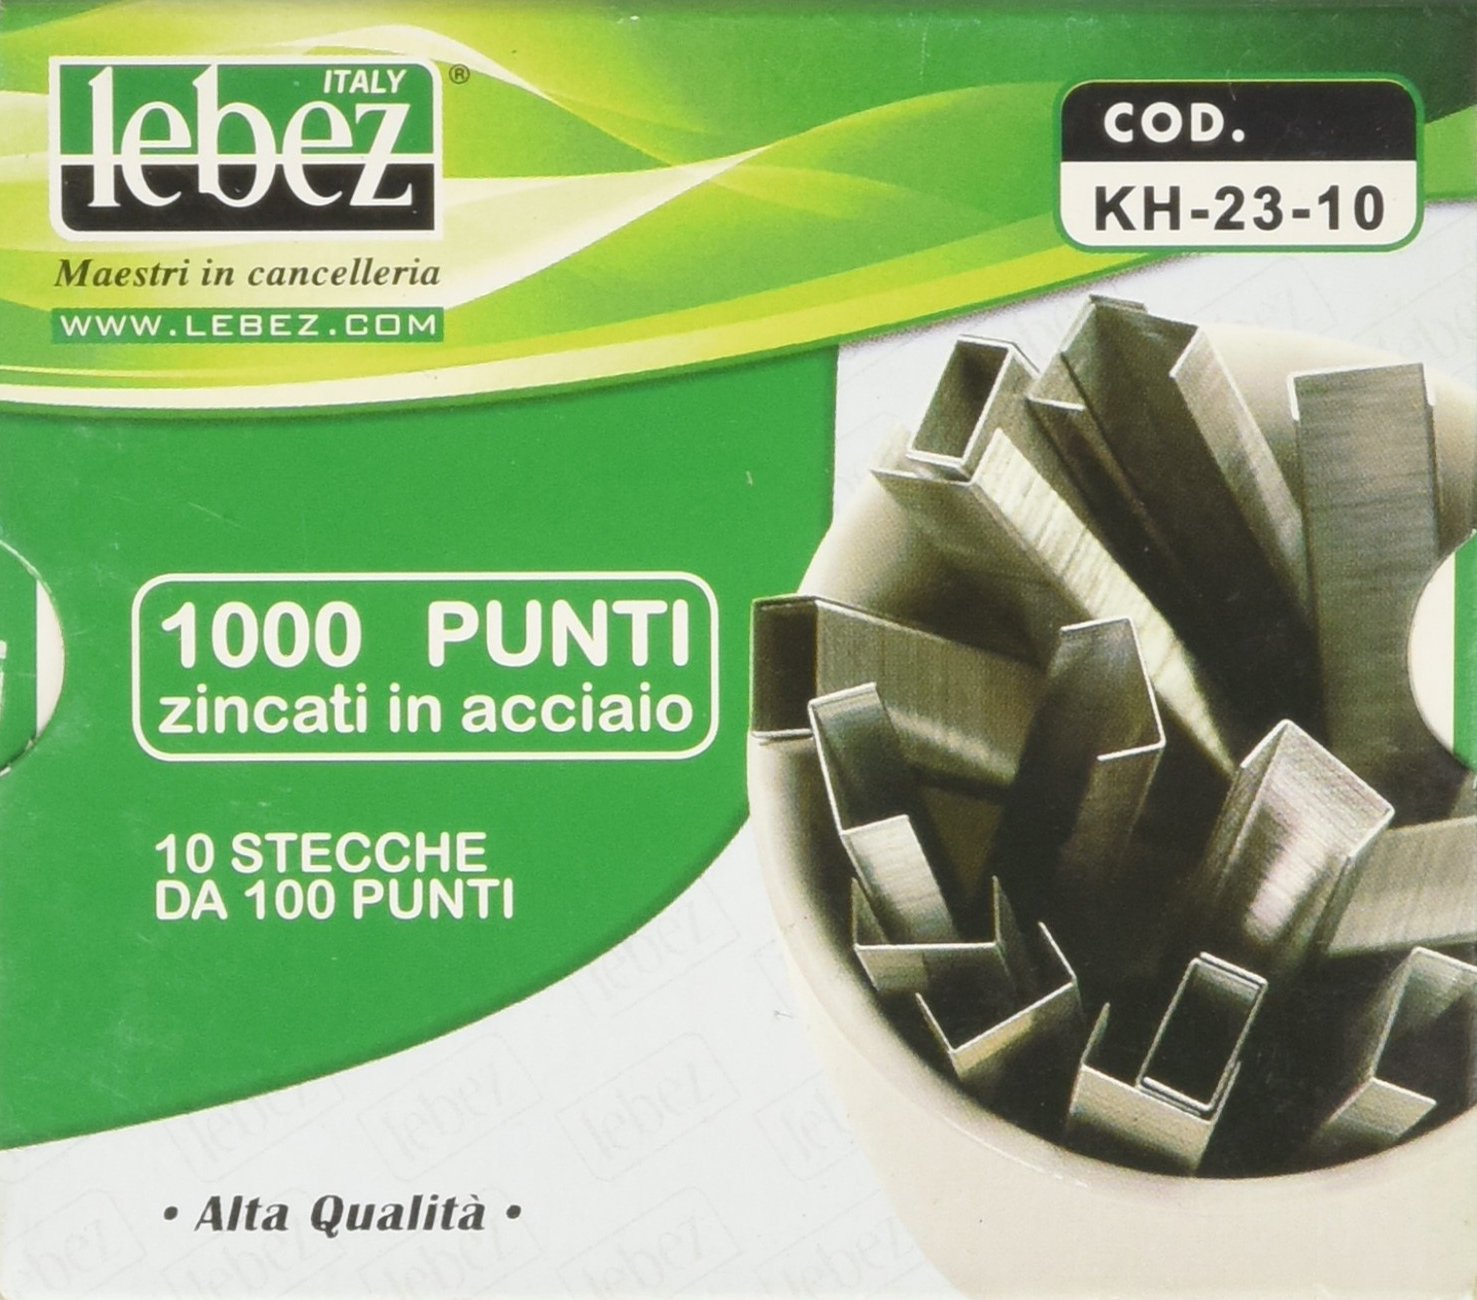 Punti KH - 23/10 - alti spessori - acciaio zincato - metallo - Lebez - conf. 1000 pezzi